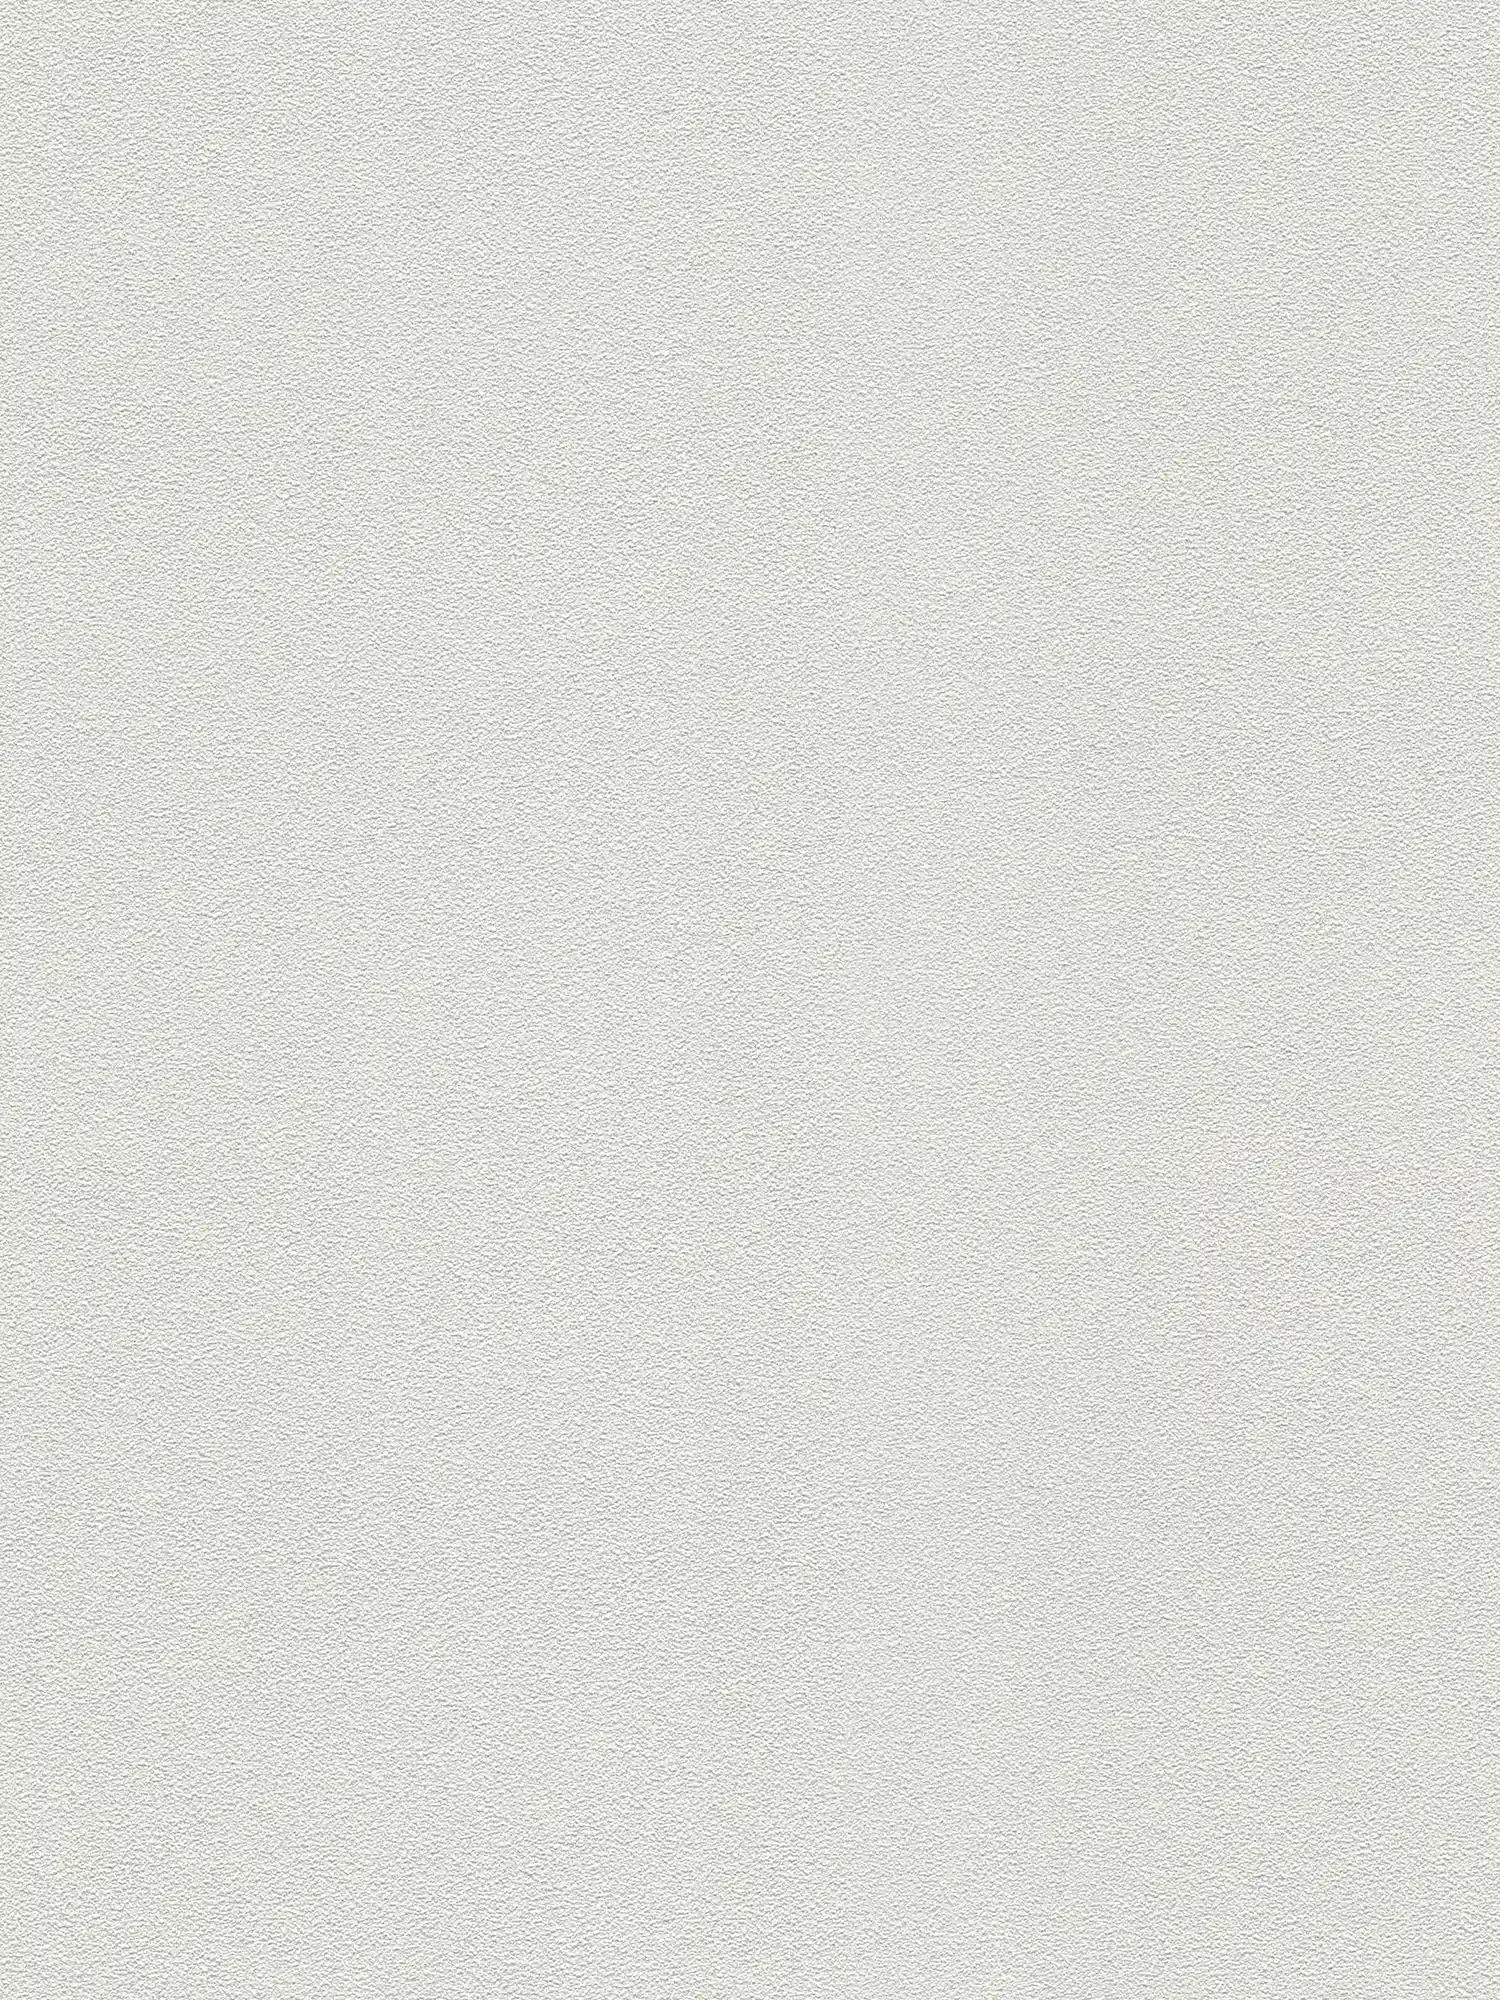         Tapete mit flacher Filzputz-Struktur – Überstreichbar, Weiß
    